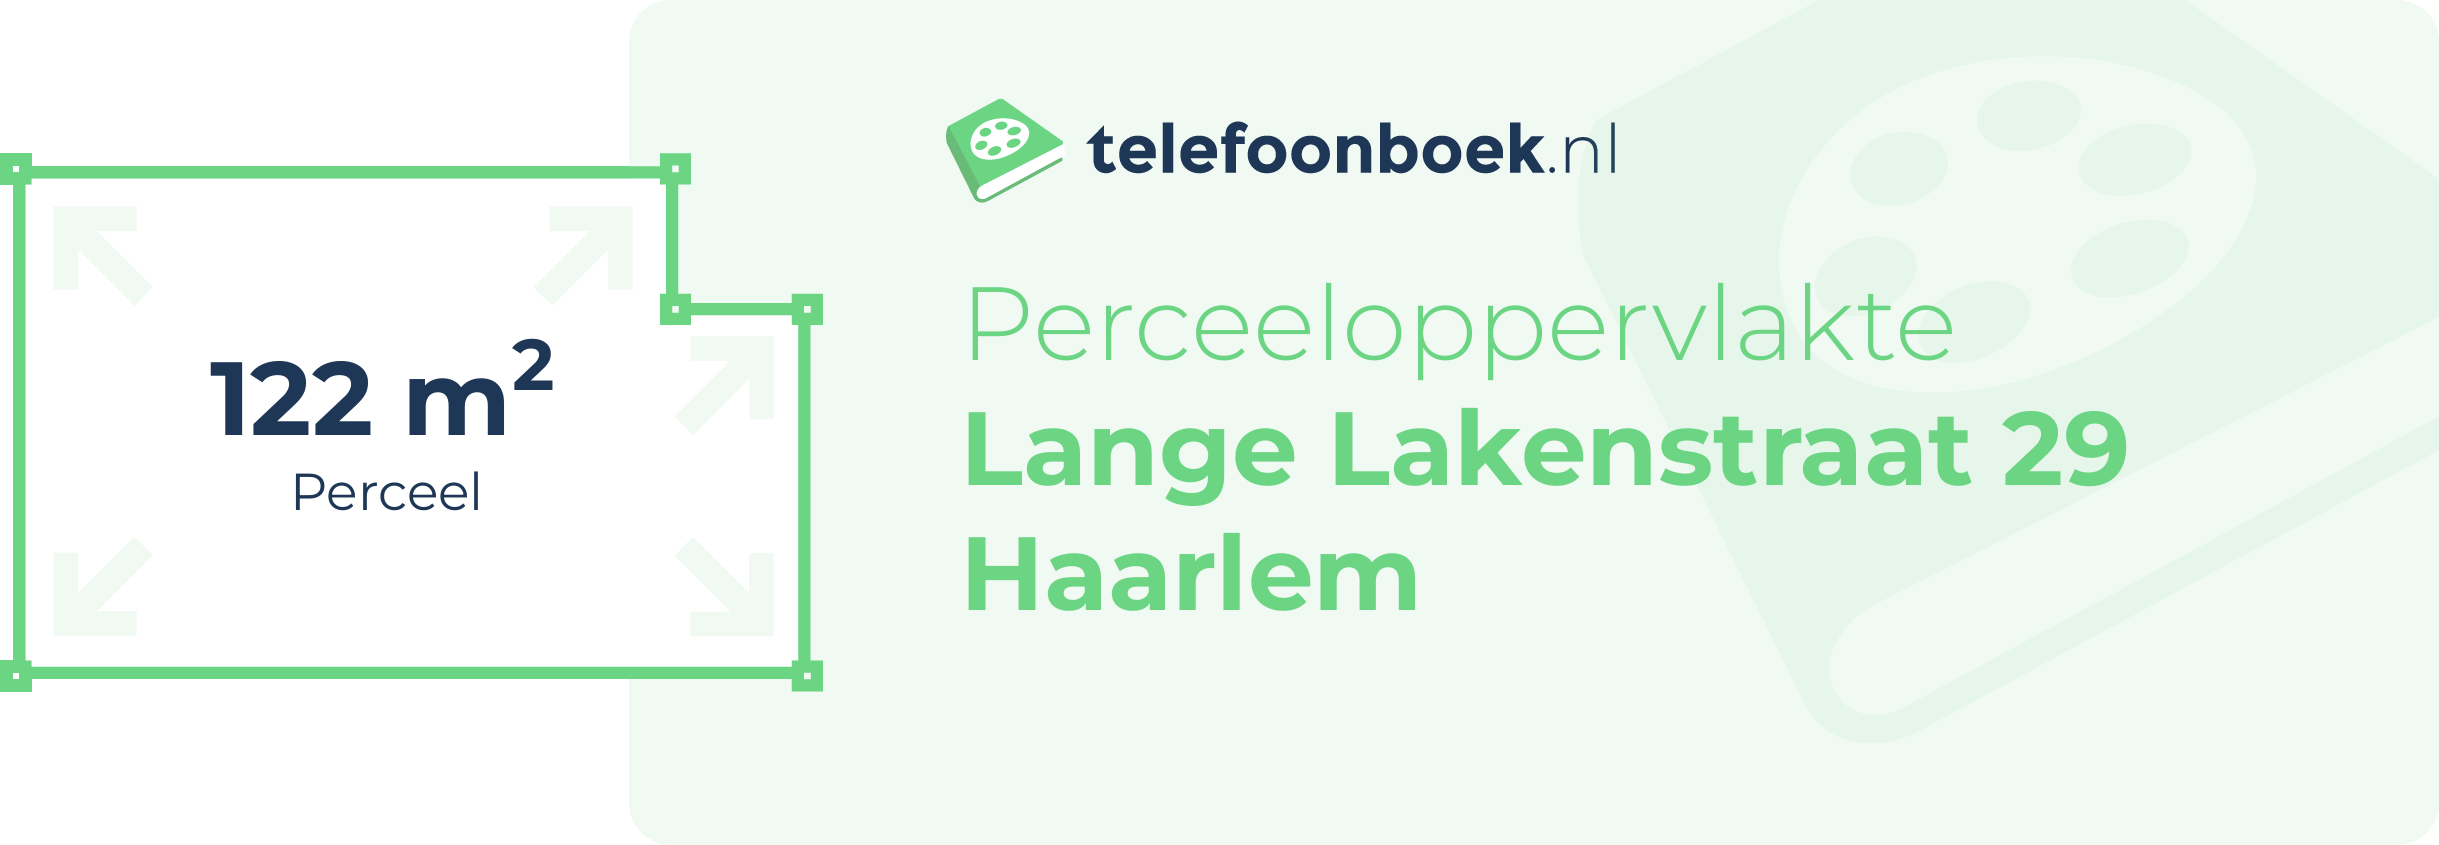 Perceeloppervlakte Lange Lakenstraat 29 Haarlem